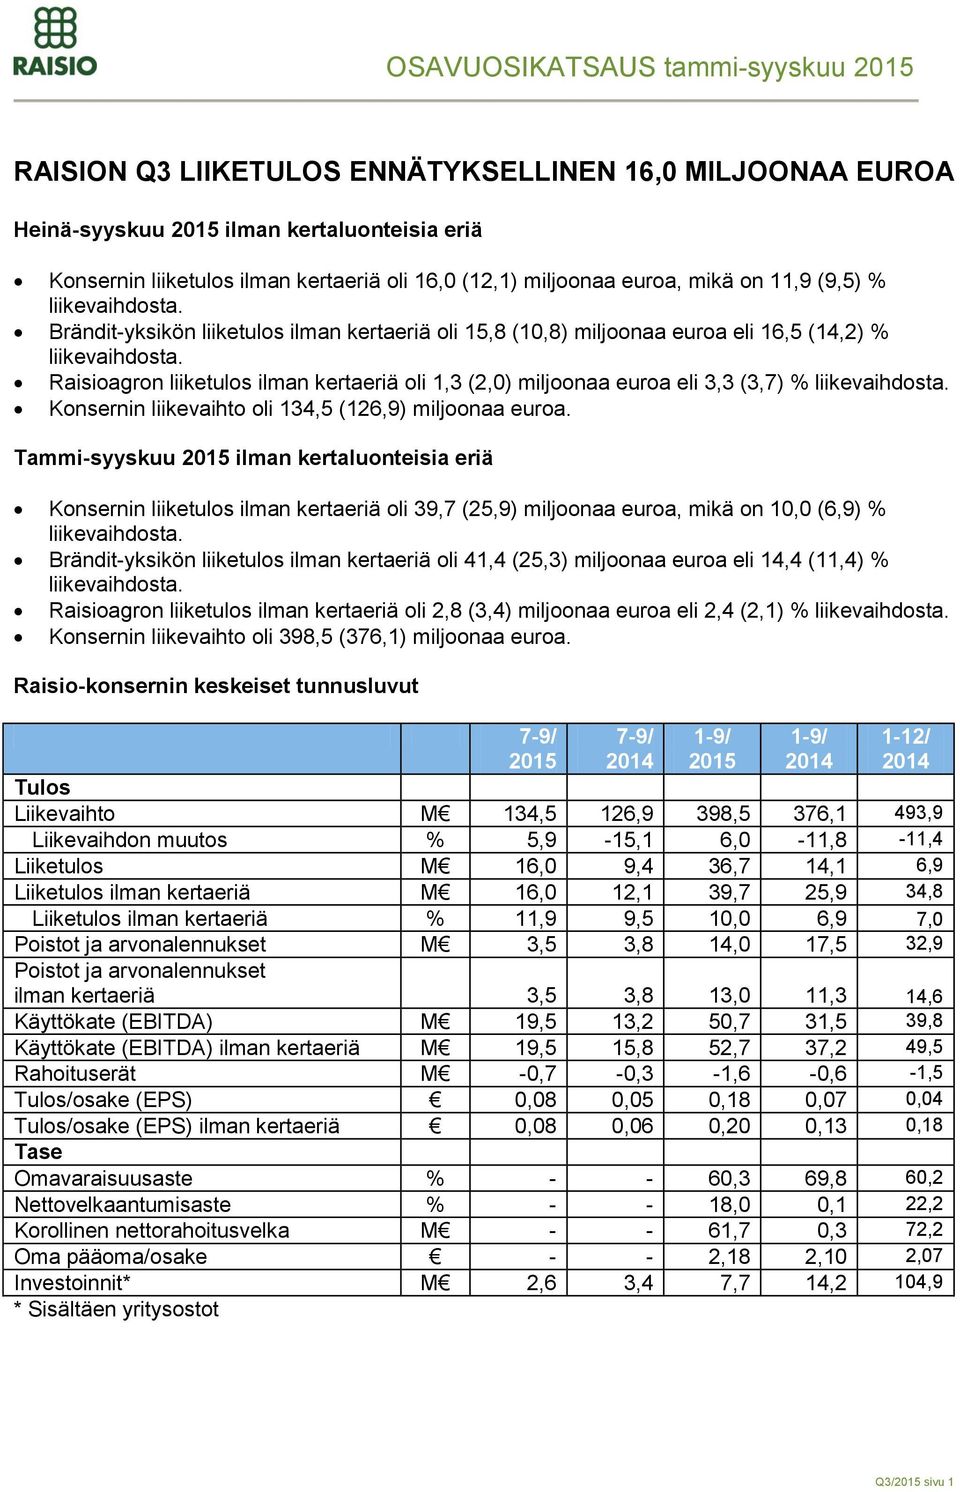 Raisioagron liiketulos ilman kertaeriä oli 1,3 (2,0) miljoonaa euroa eli 3,3 (3,7) % liikevaihdosta. Konsernin liikevaihto oli 134,5 (126,9) miljoonaa euroa.